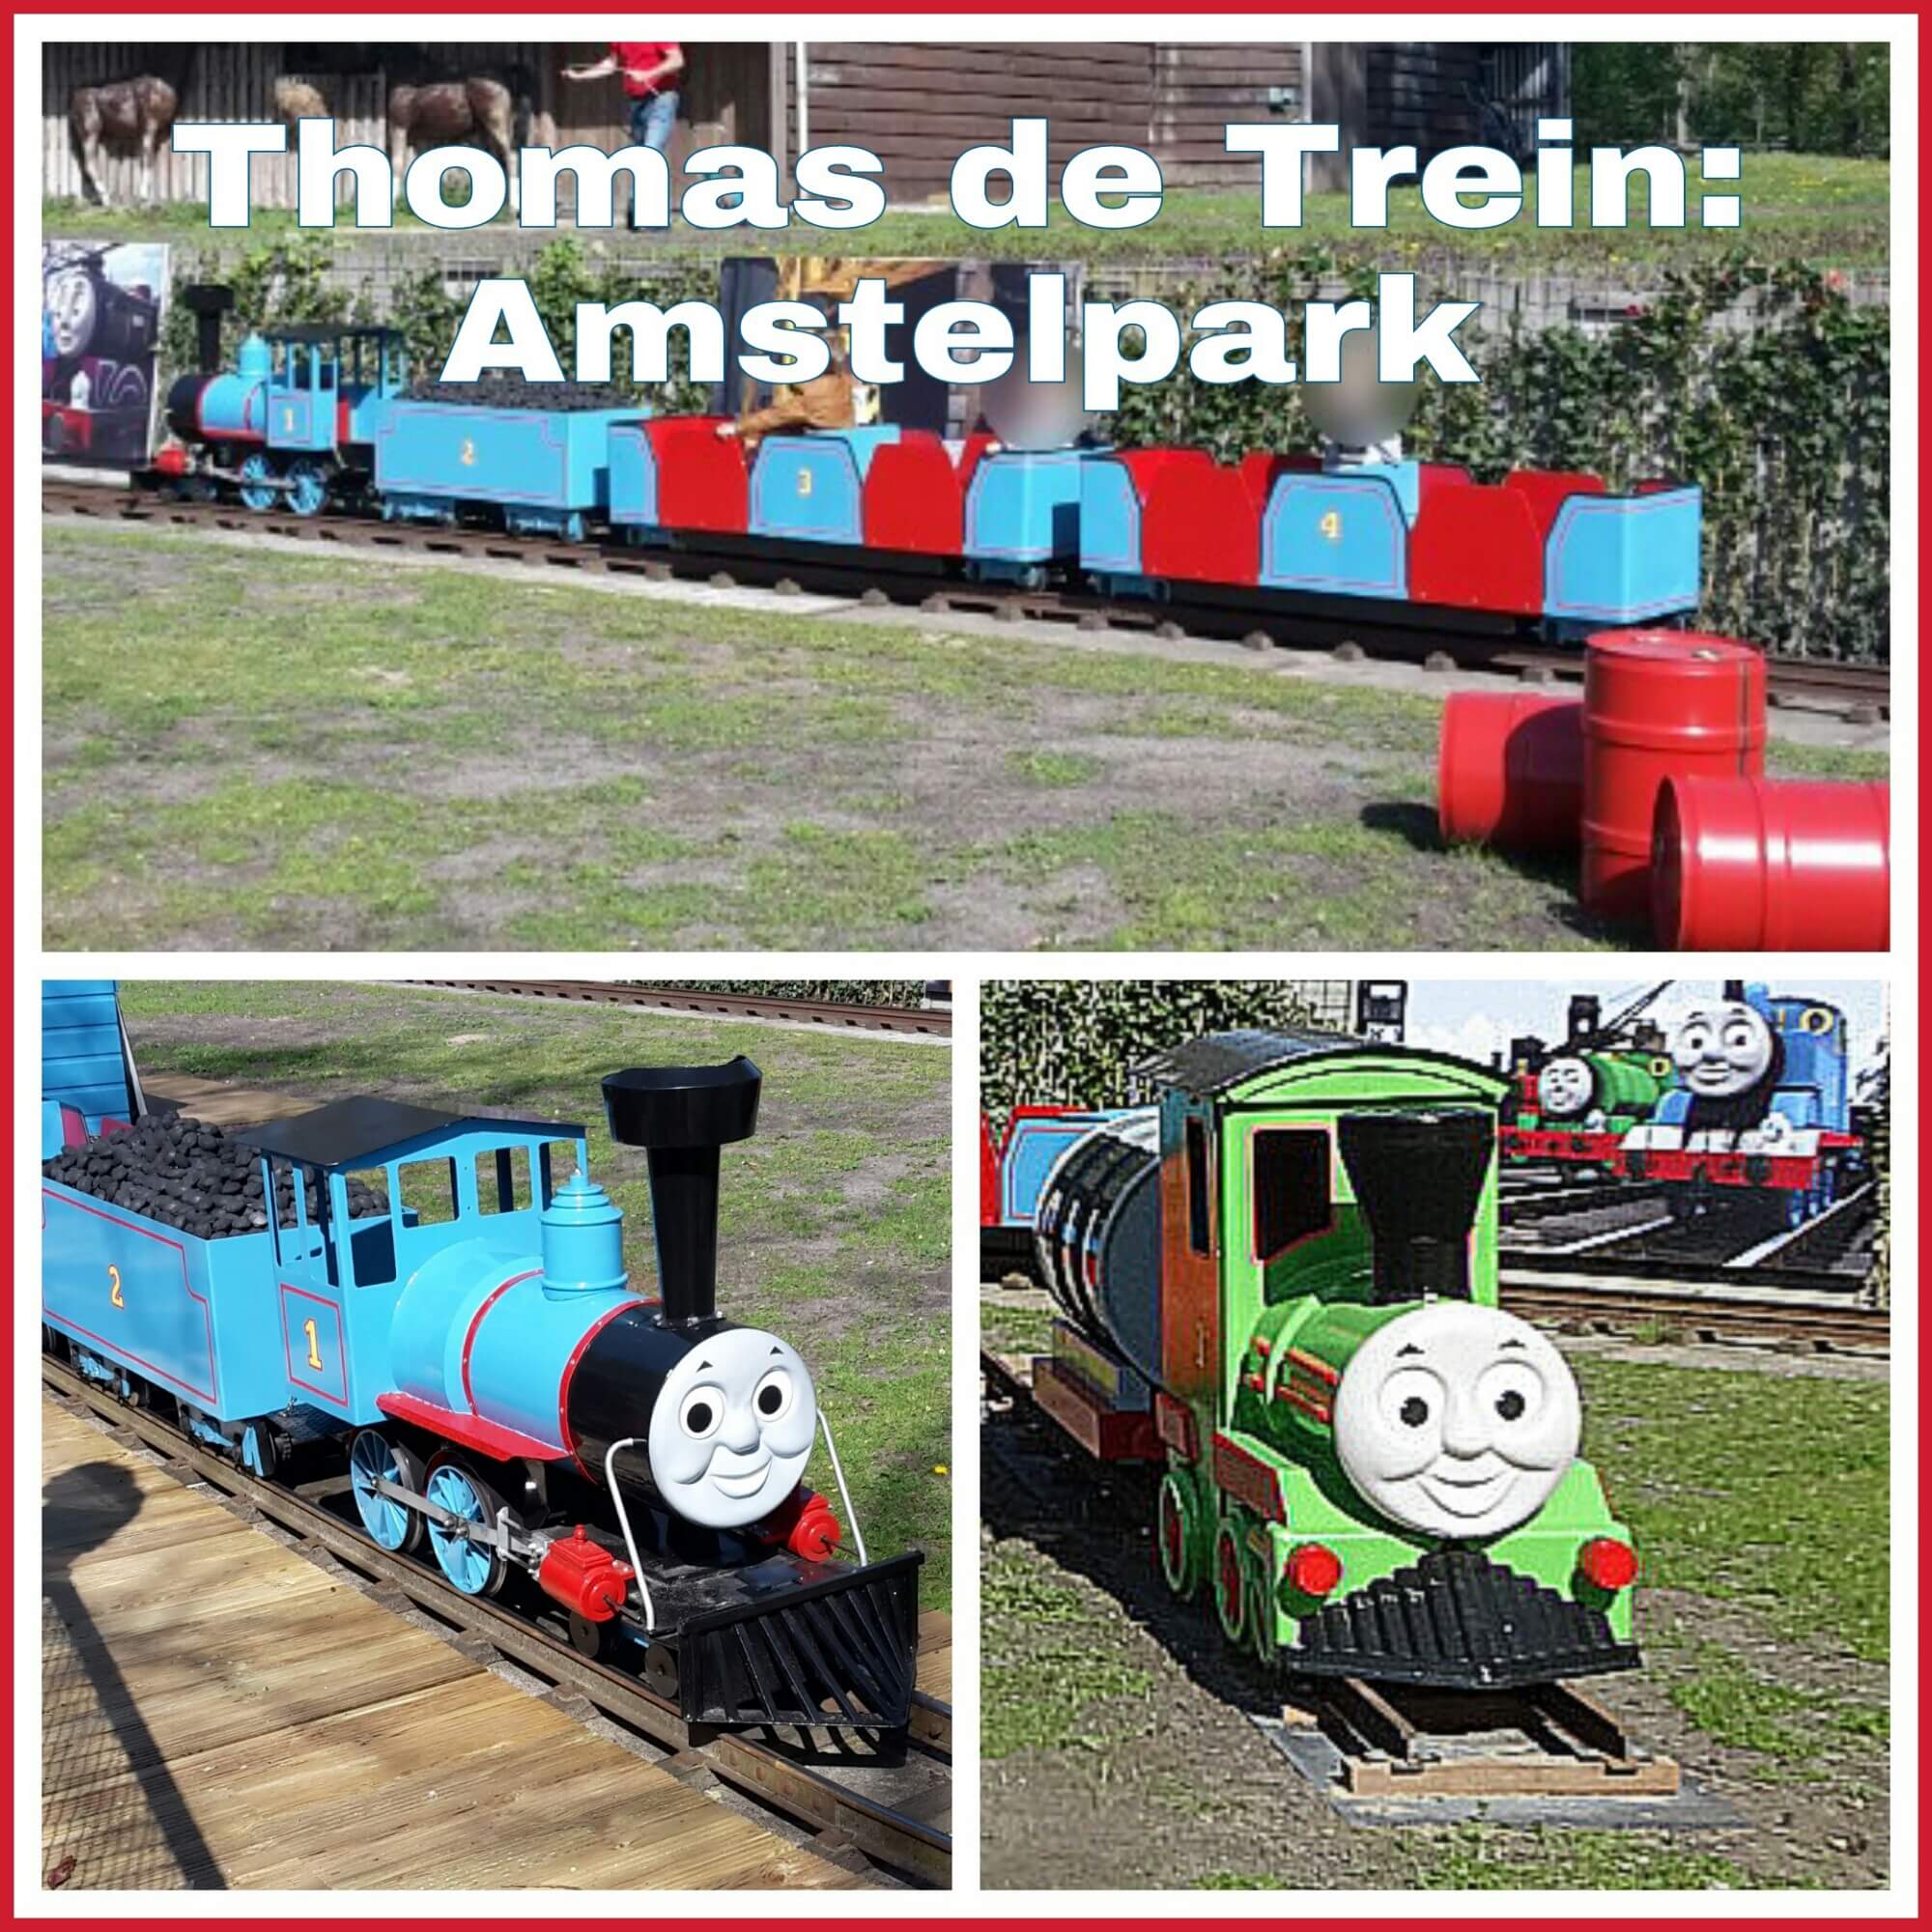 Amstelpark: speeltuin, kinderboerderij, pannenkoek & wandeling aan de rand van Amsterdam - met Thomas de Trein